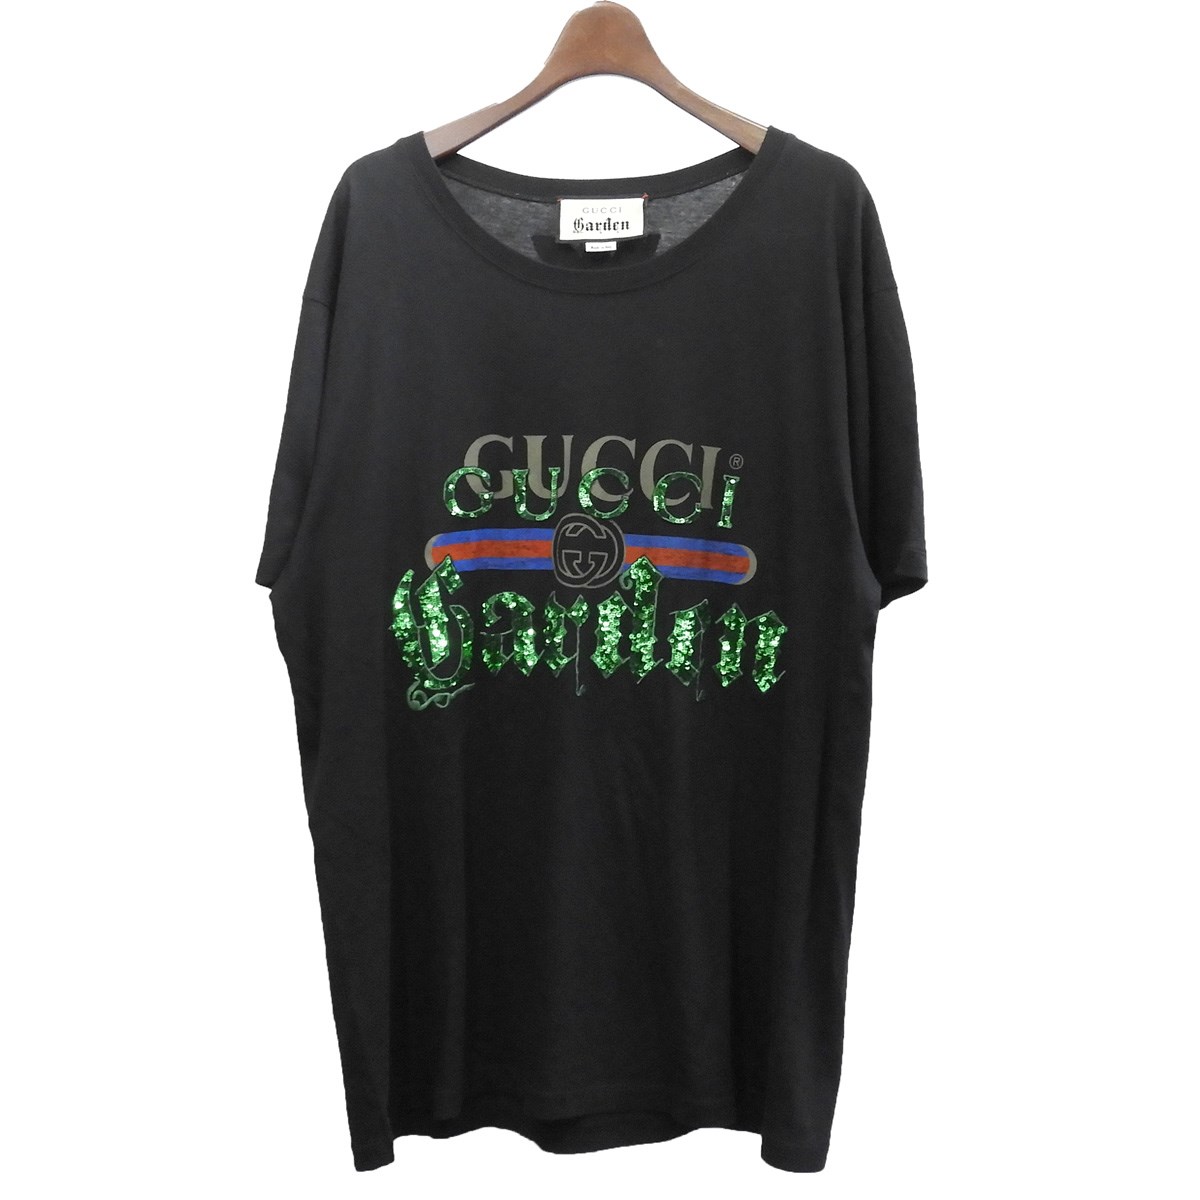 gucci garden t shirt, OFF 75%,www 